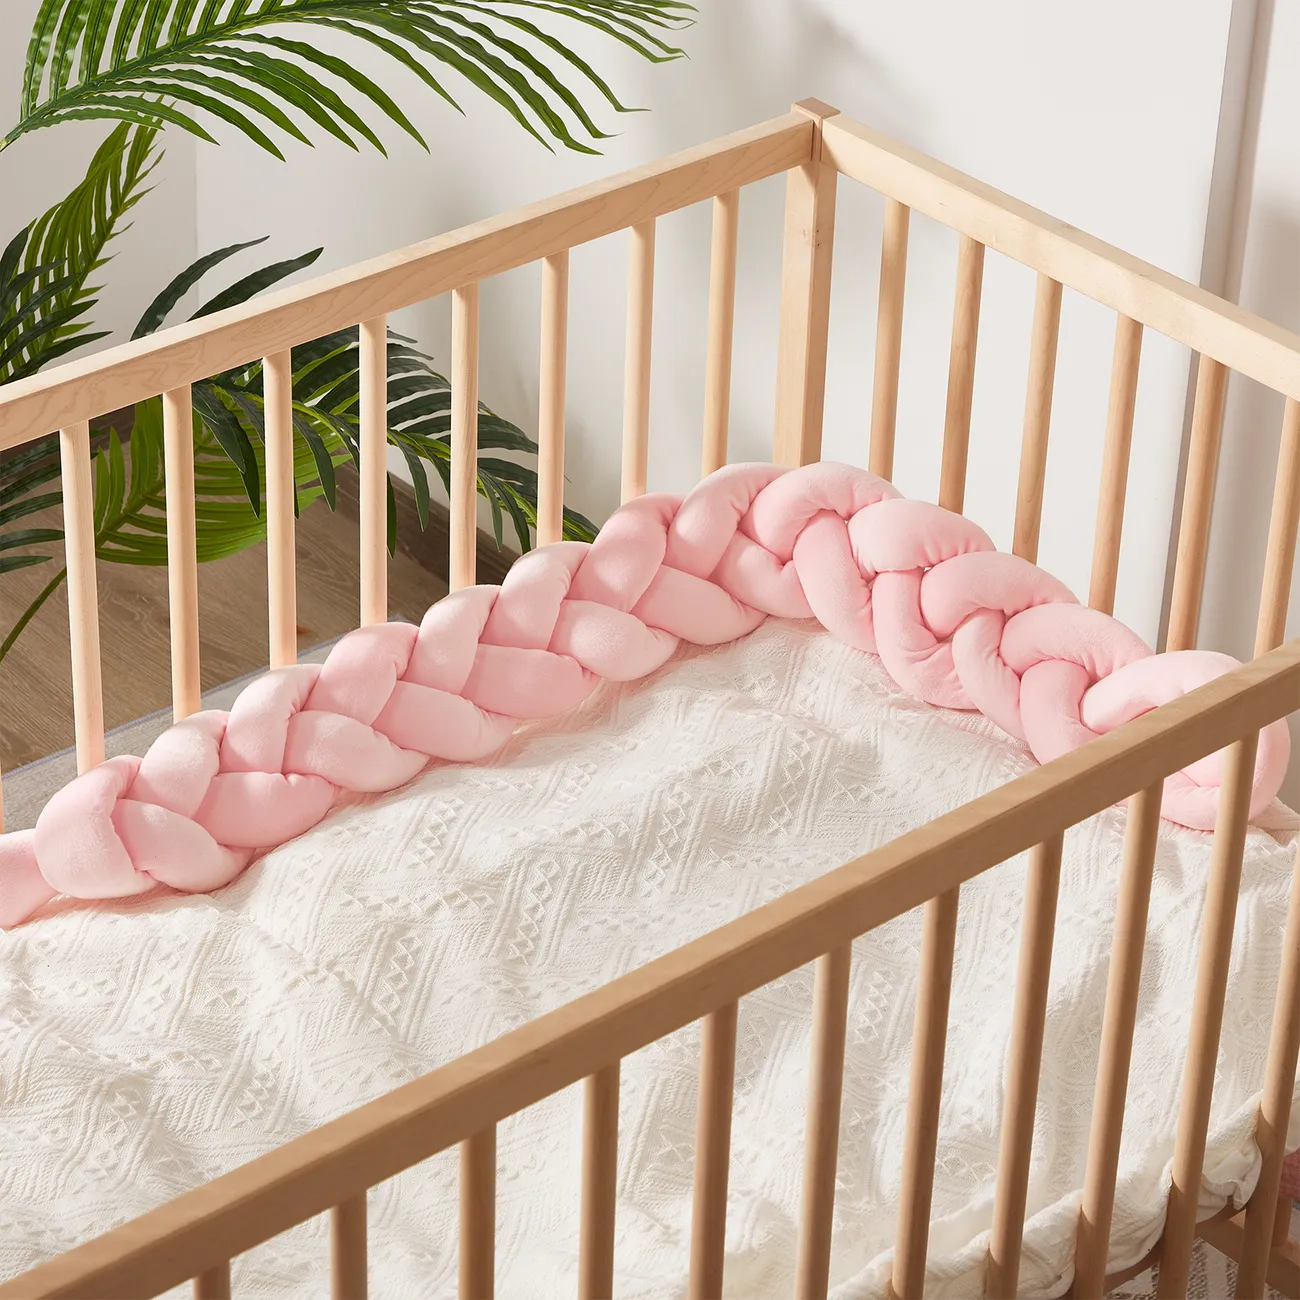 Pare-chocs de lit pour bébé avec conception anti-collision Rose big image 1